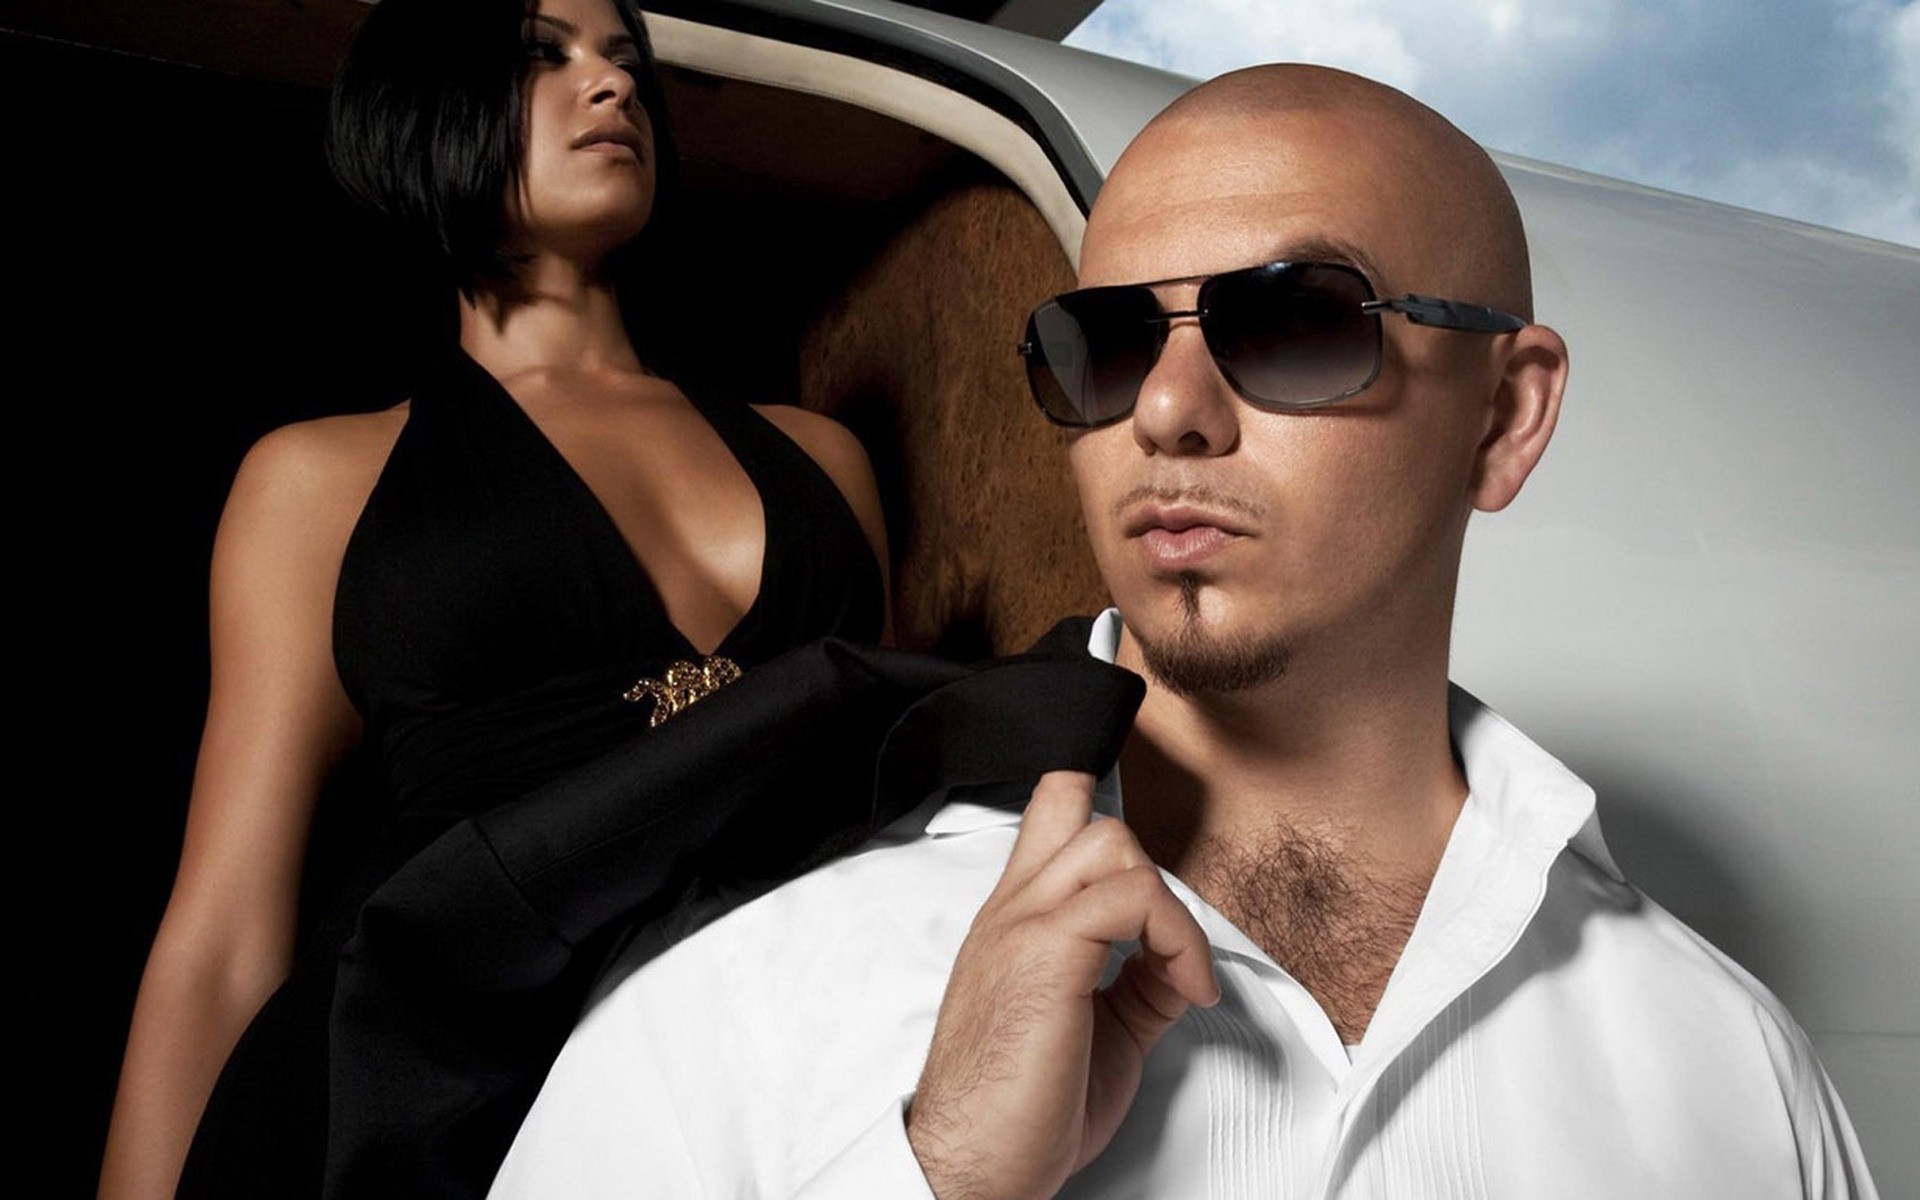 musicians man fashion sunglasses woman portrait indoors cuban luxury rich talent